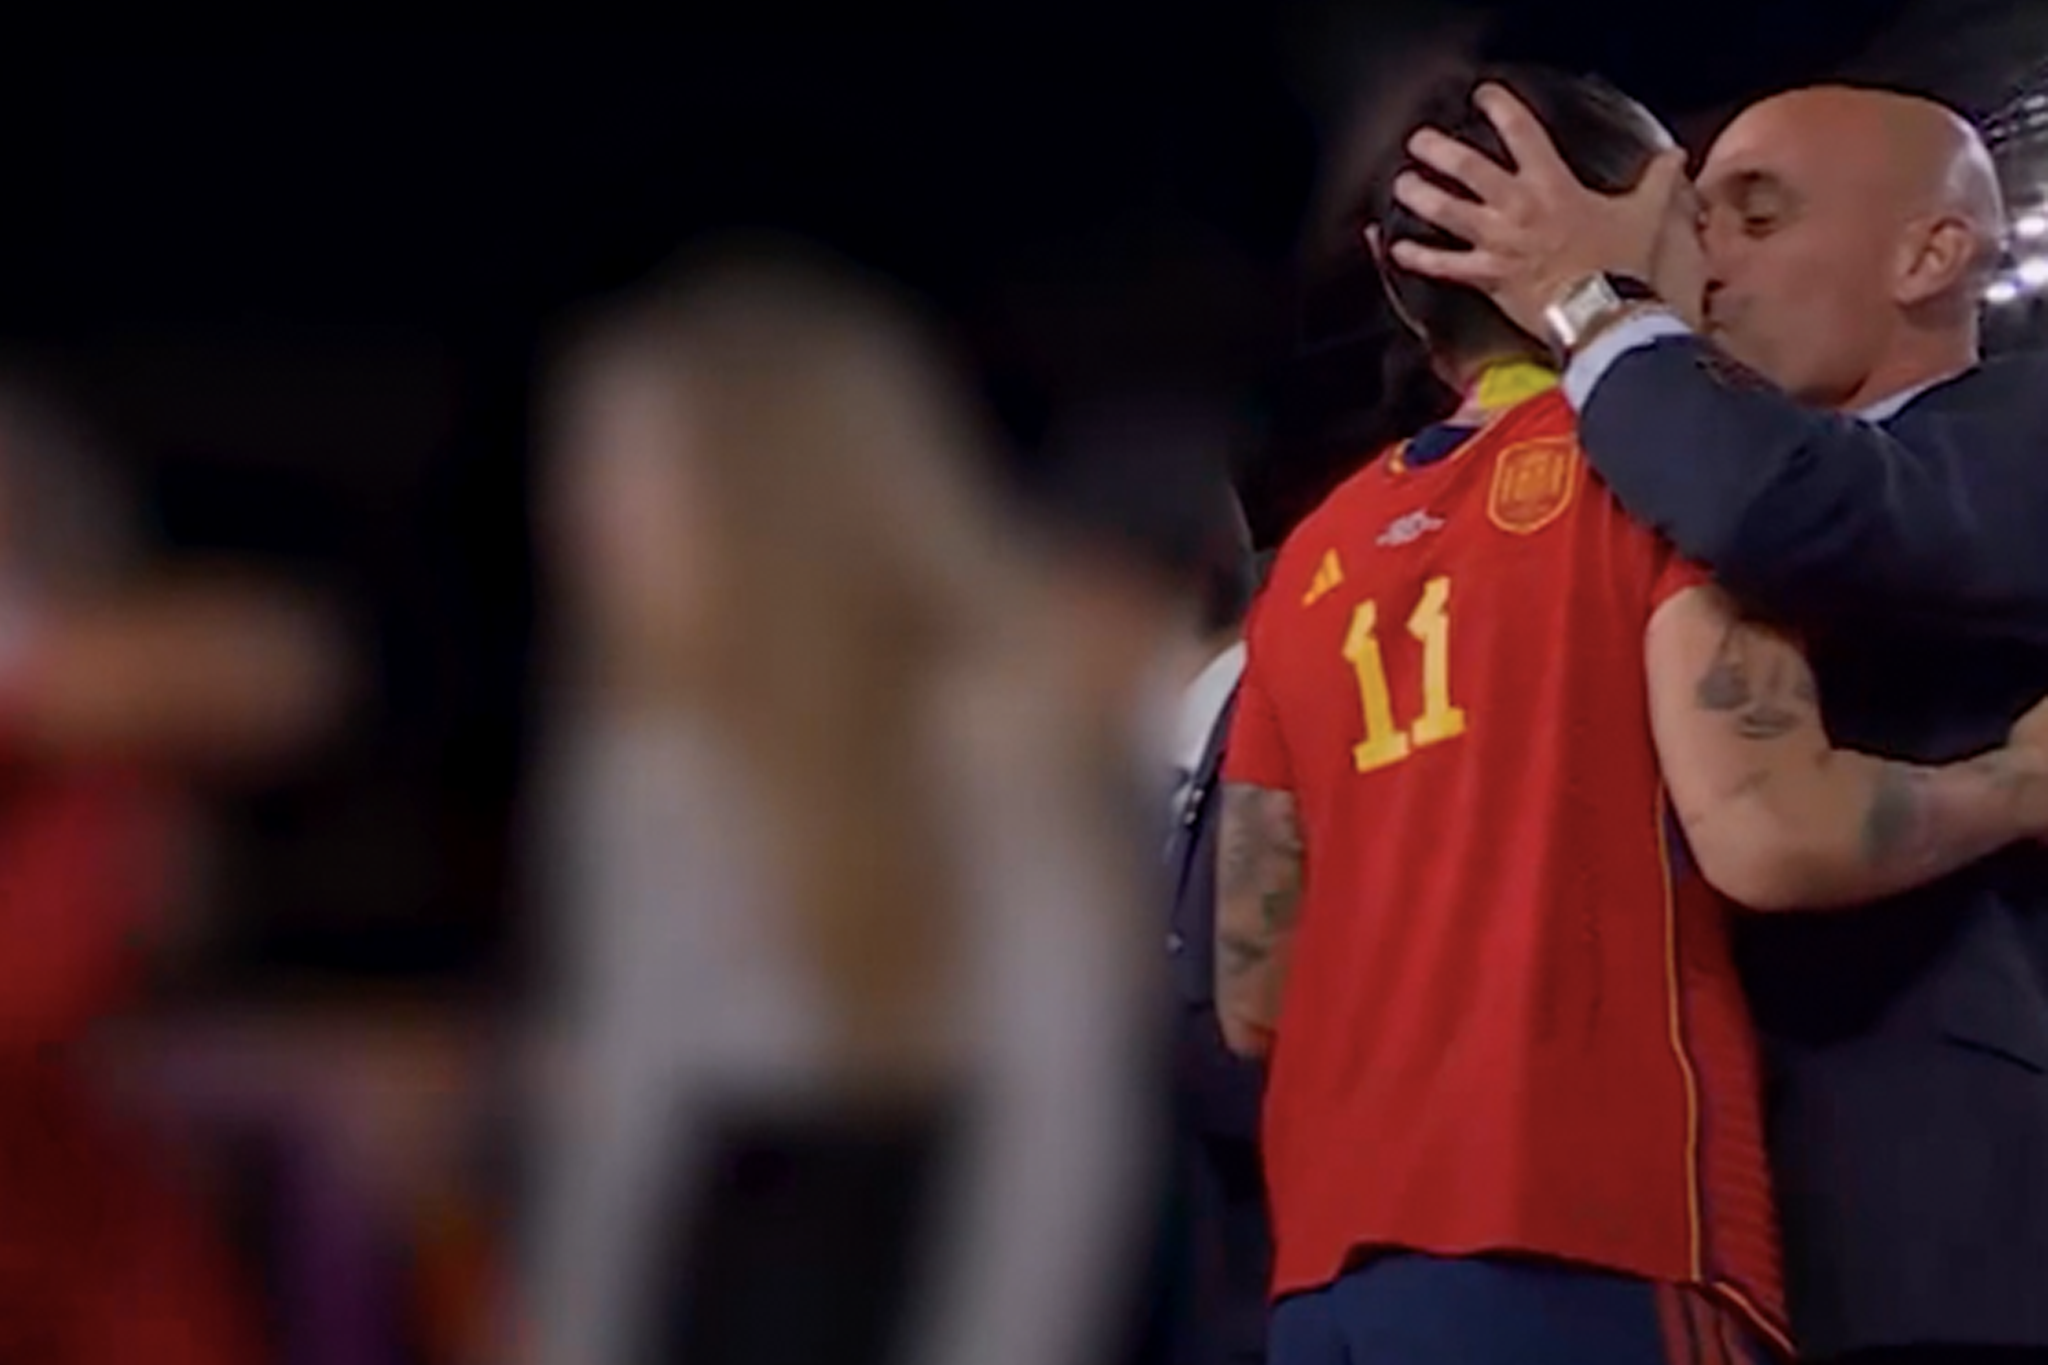 FA Spanish president Luis Rubiales kisses footballer Jenni Hermoso